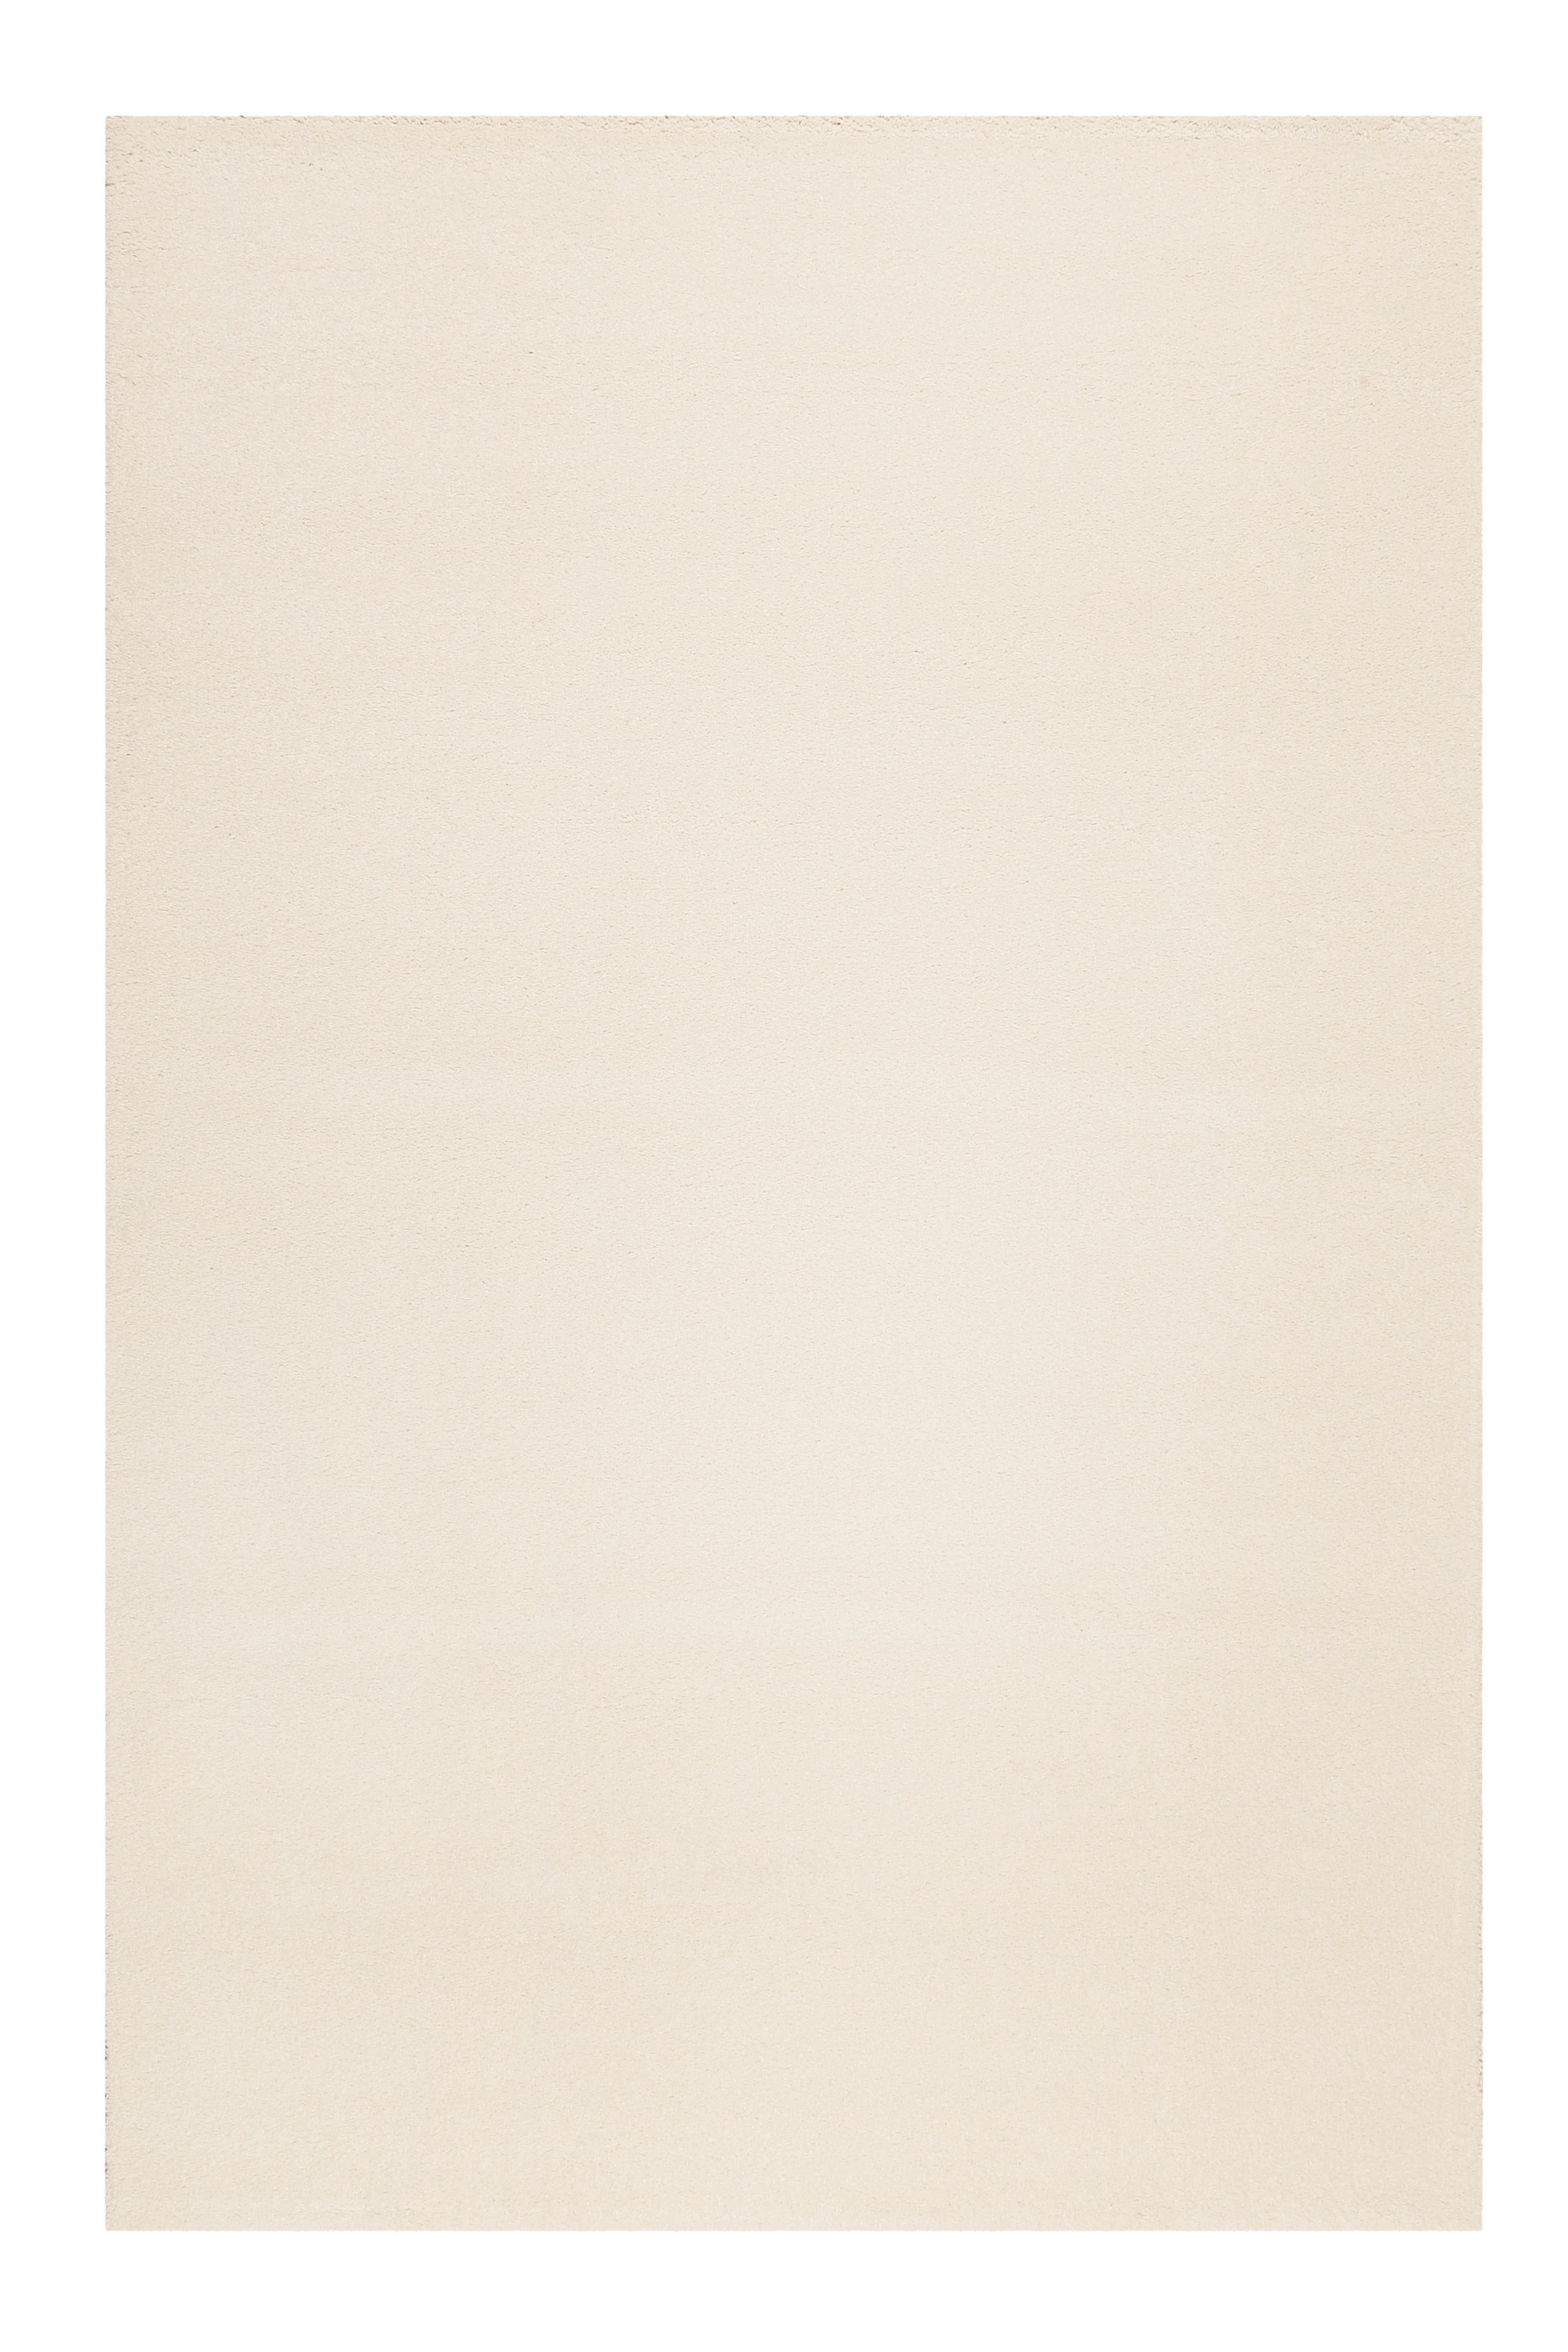 WEBTEPPICH 80/150 cm California  - Creme/Weiß, KONVENTIONELL, Textil (80/150cm) - Esprit